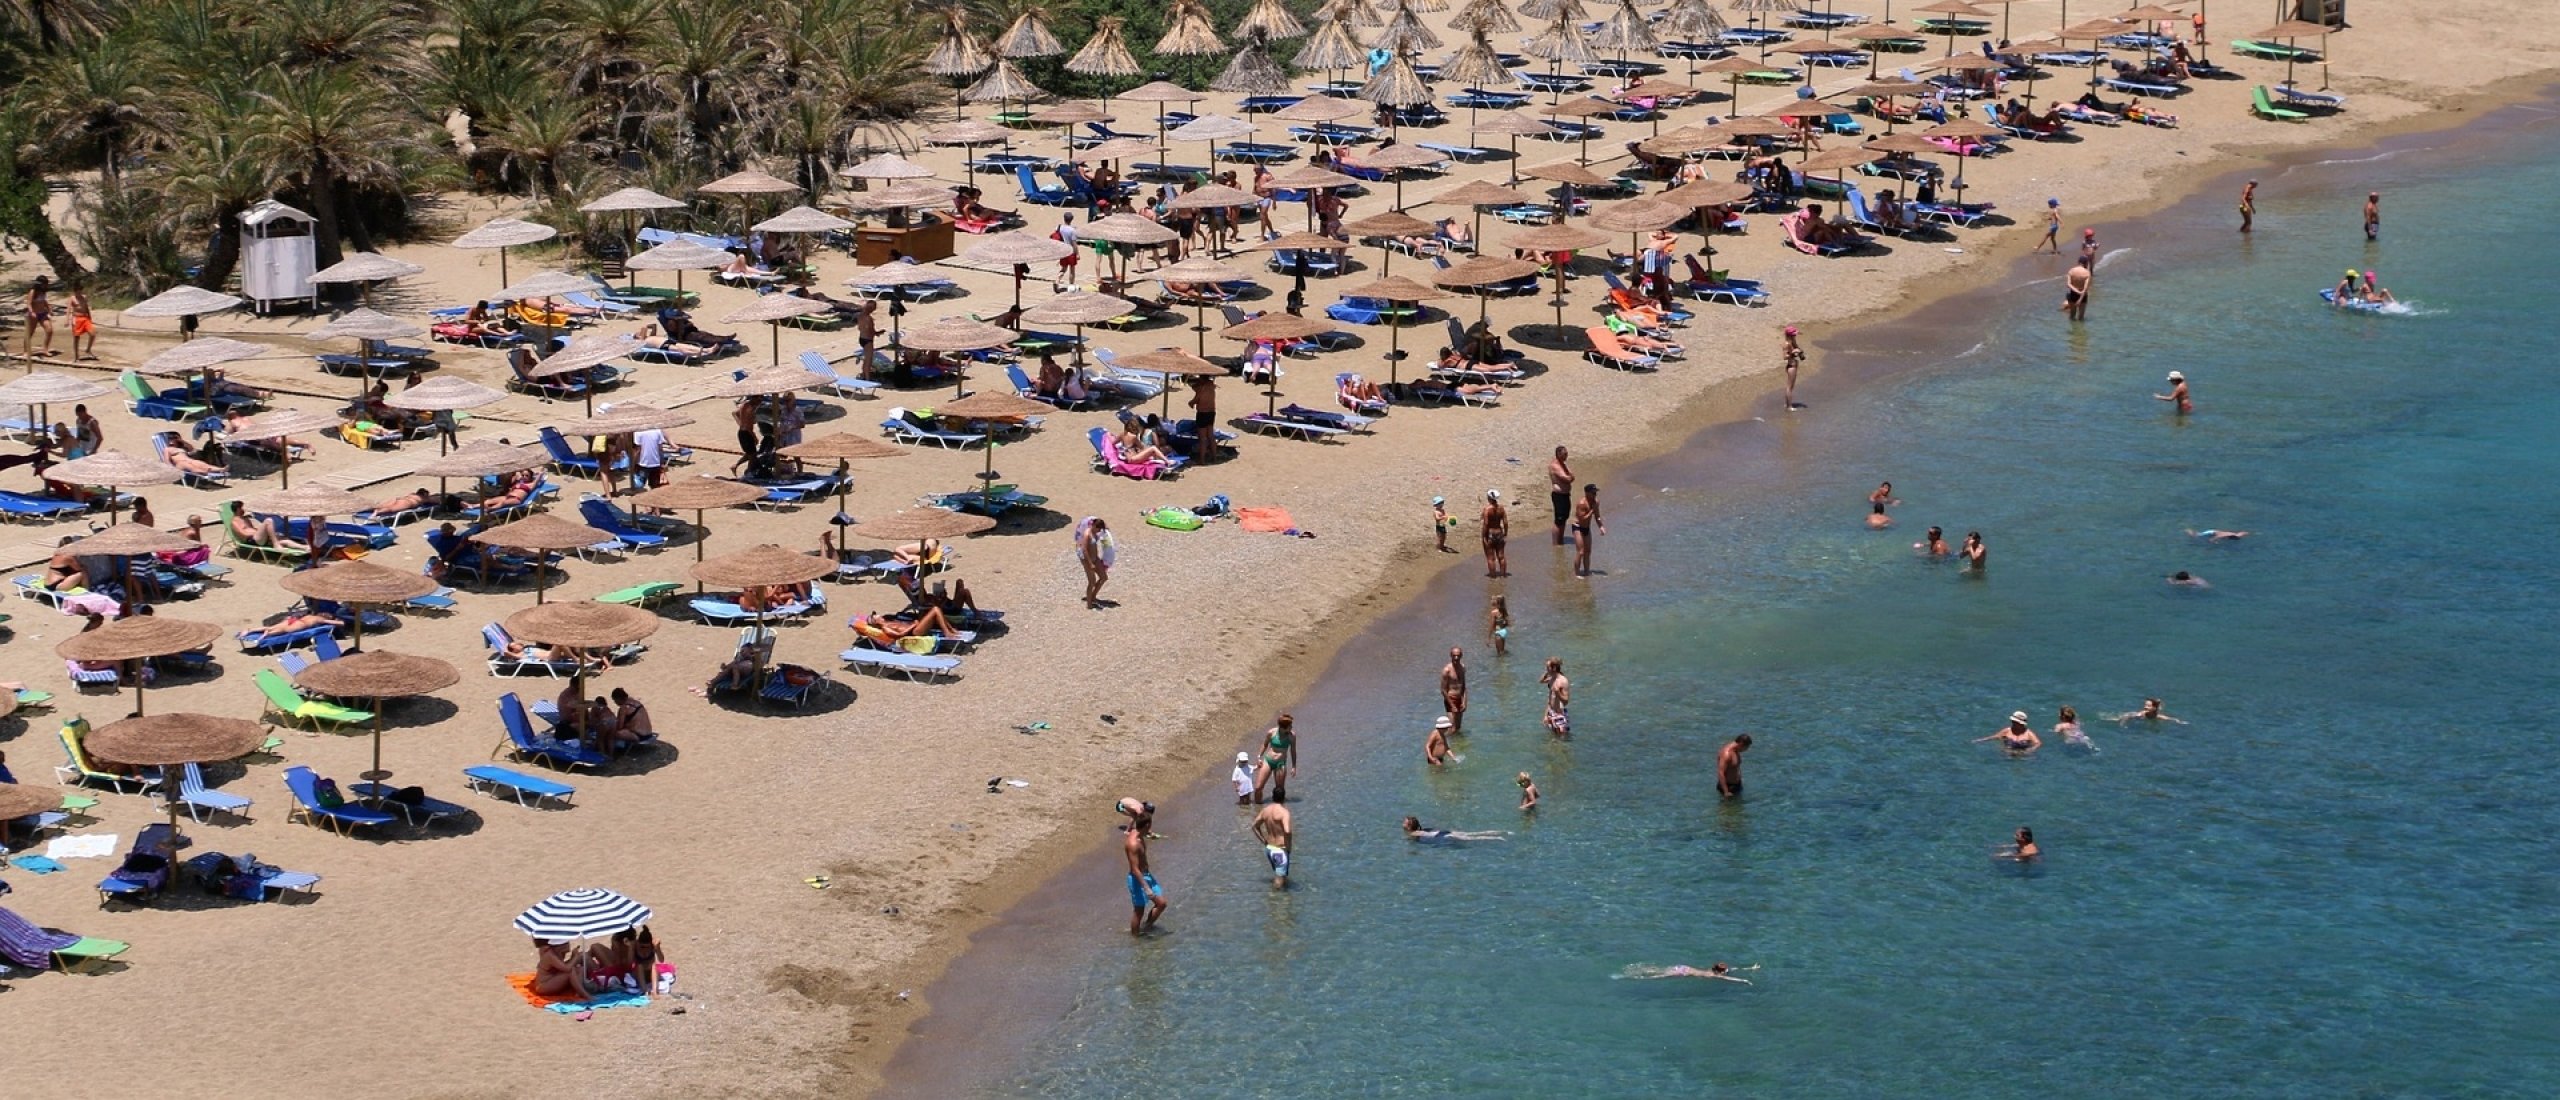 Vakantie naar Mallorca of Kreta? Ontdek welk eiland bij jou past!